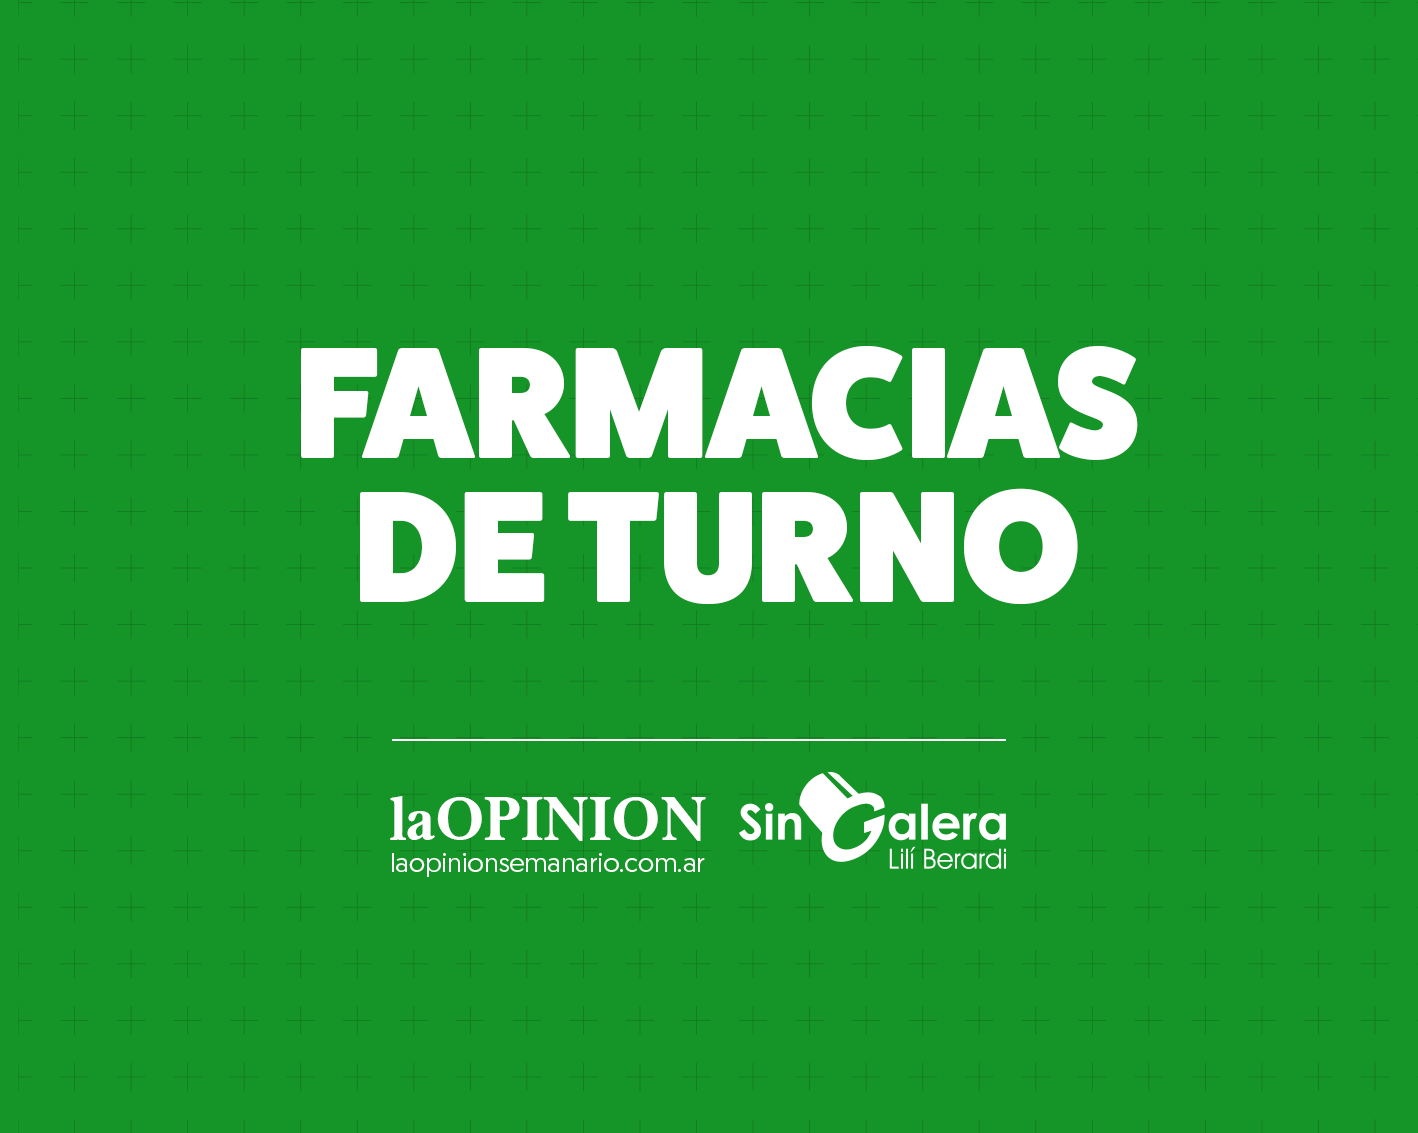 Farmacias de turno 27/04: Molina y Mauro Coliva